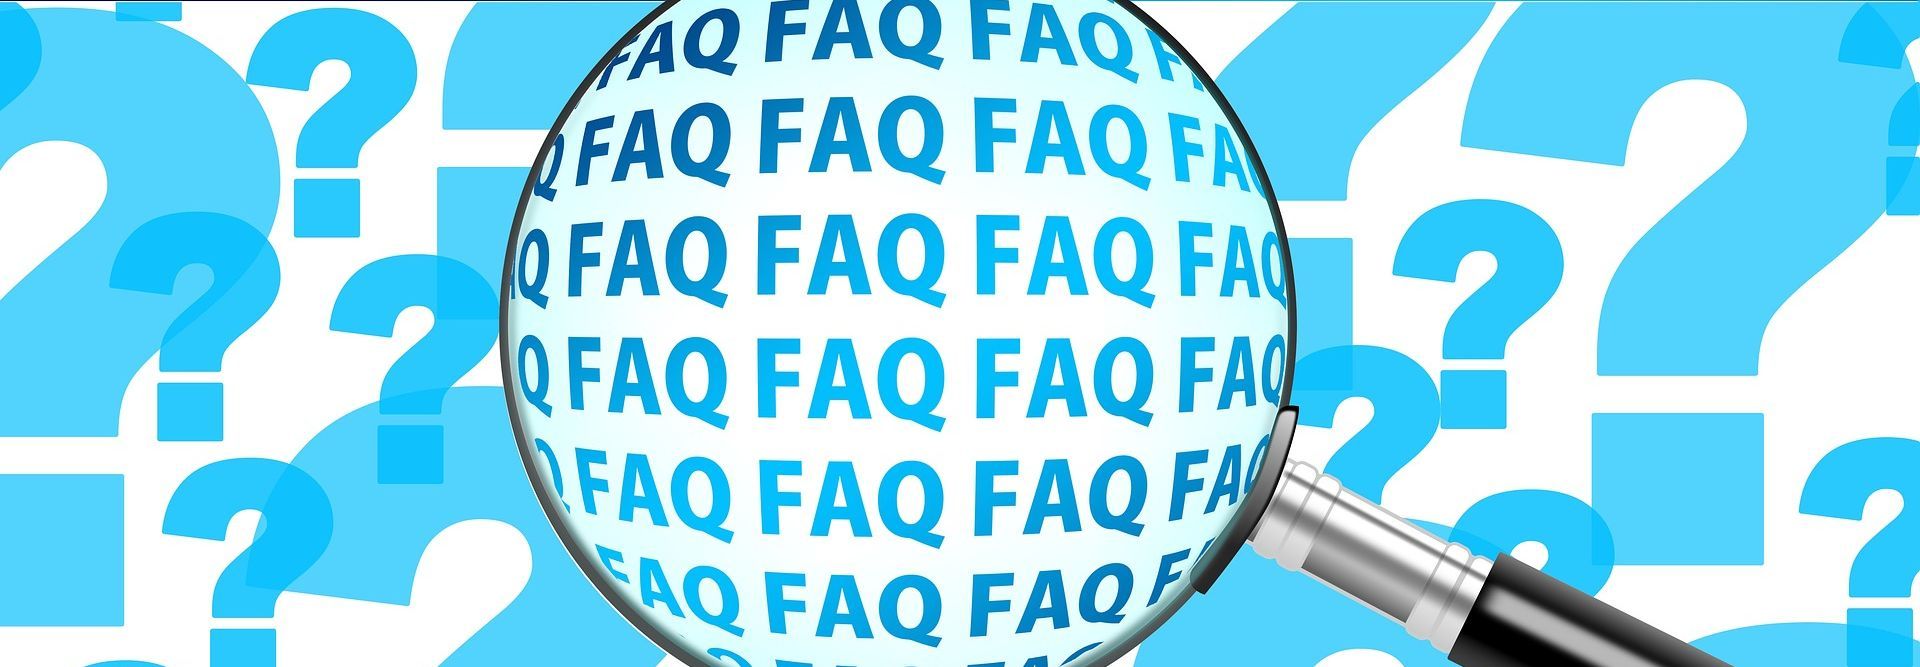 Blaue Fragezeichen und das Wort "FAQ" mit einer Luper hervorgehoben.